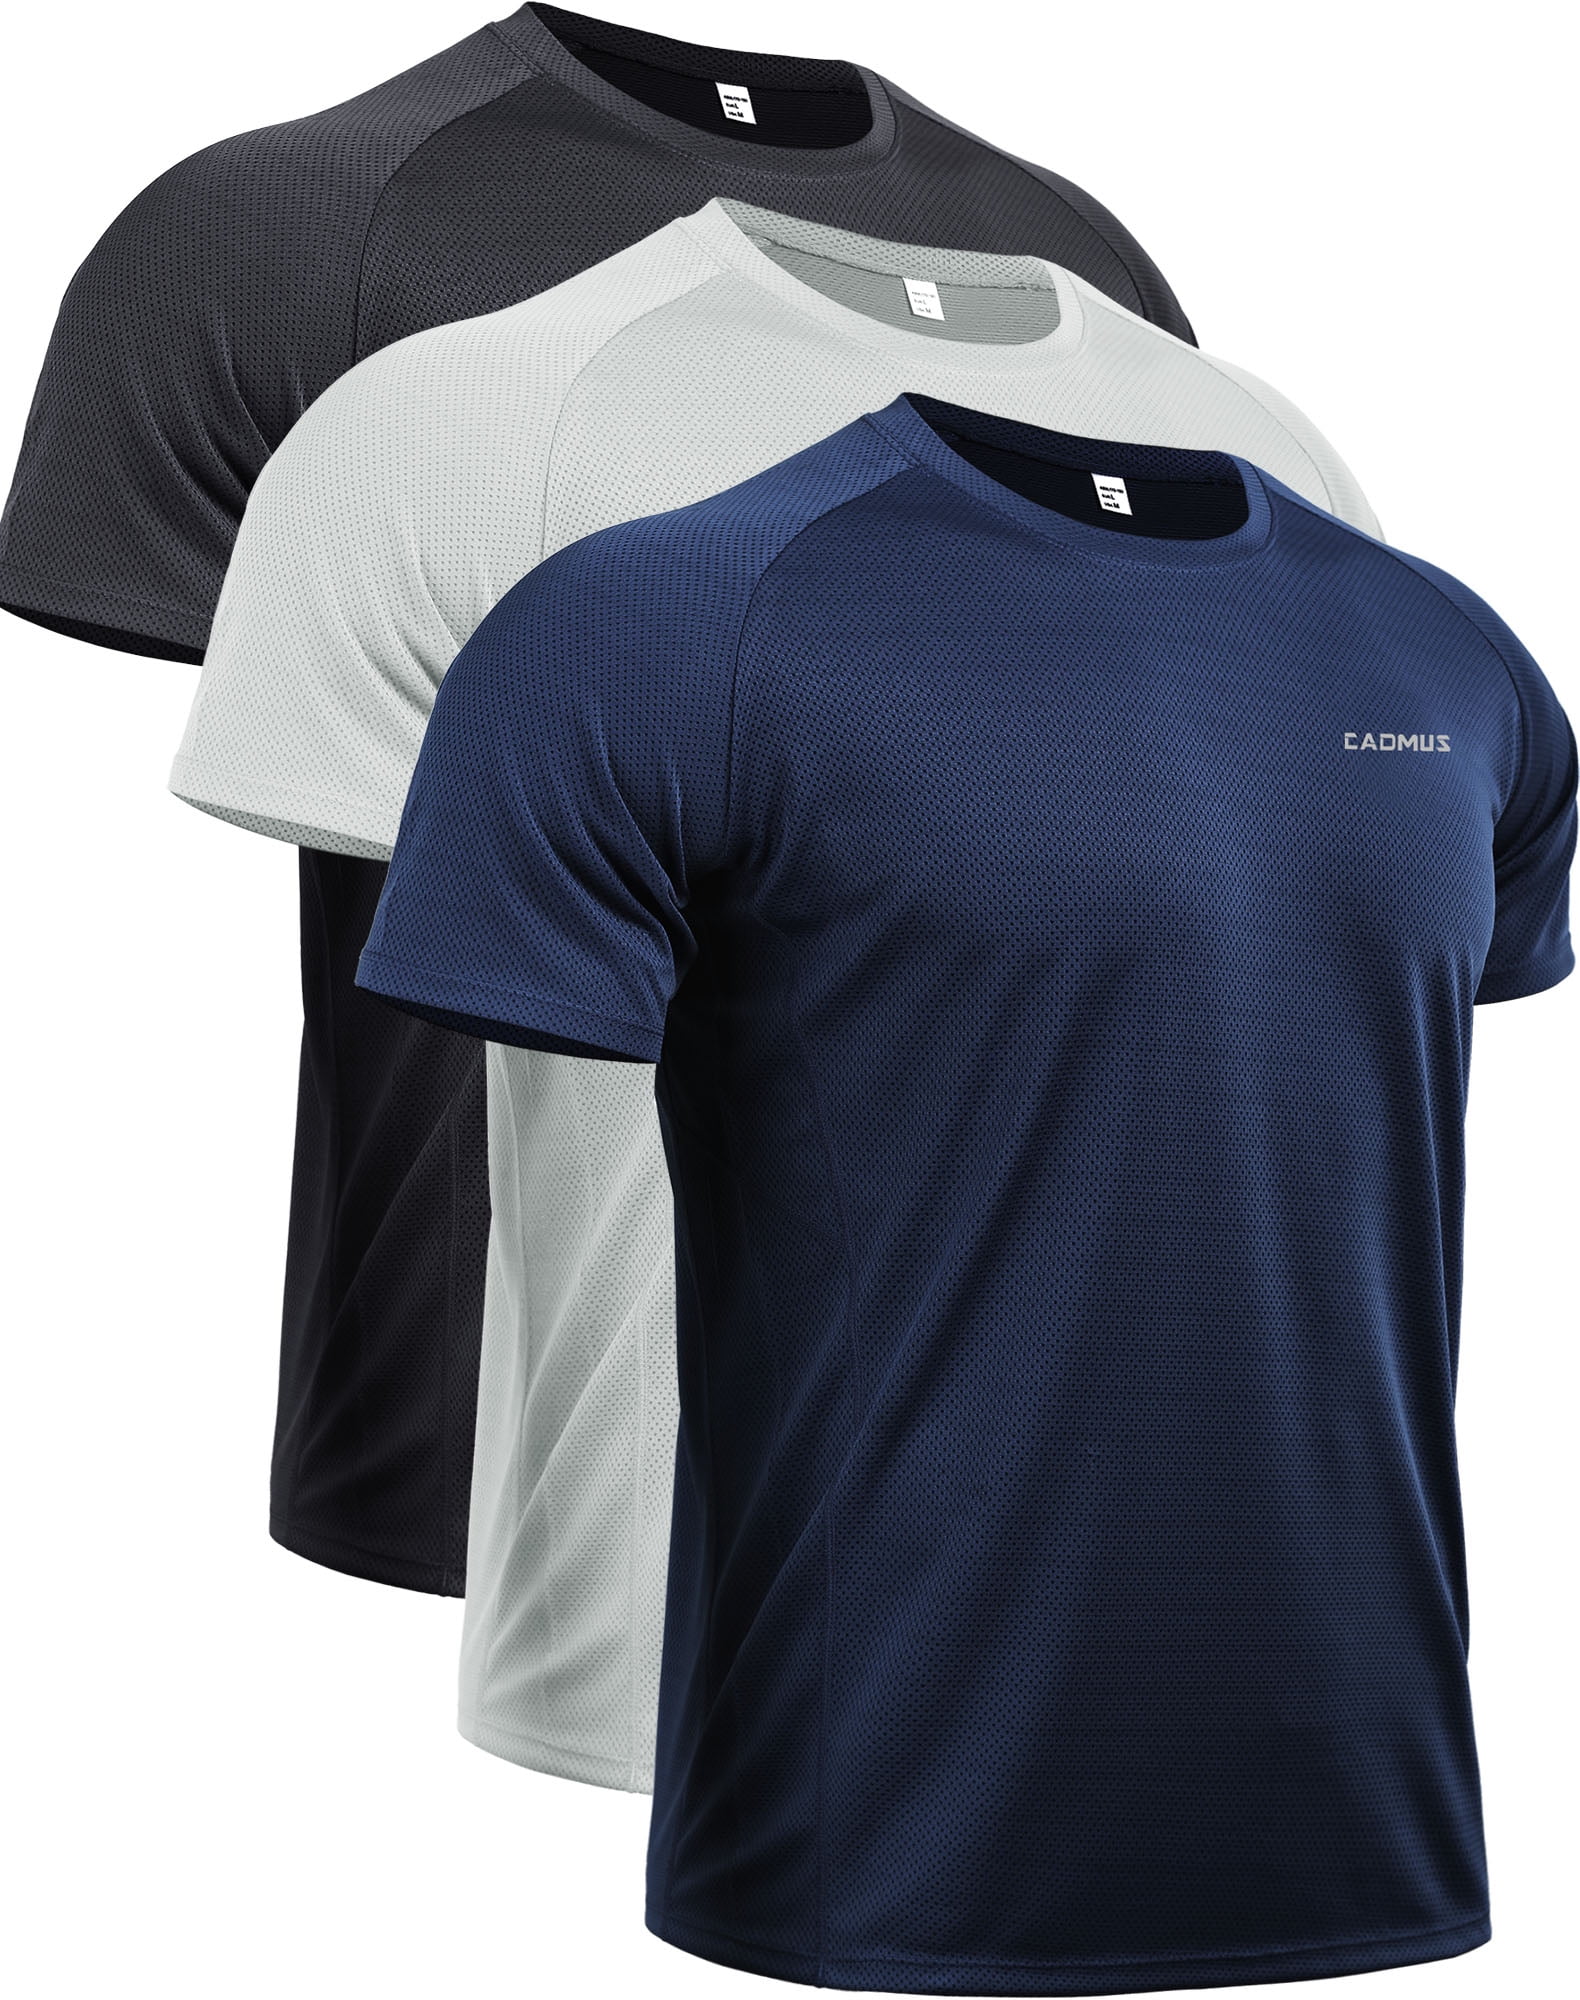 Barbell Apparel Men's Fitted Drop Hem Short Sleeve Workout Shirt